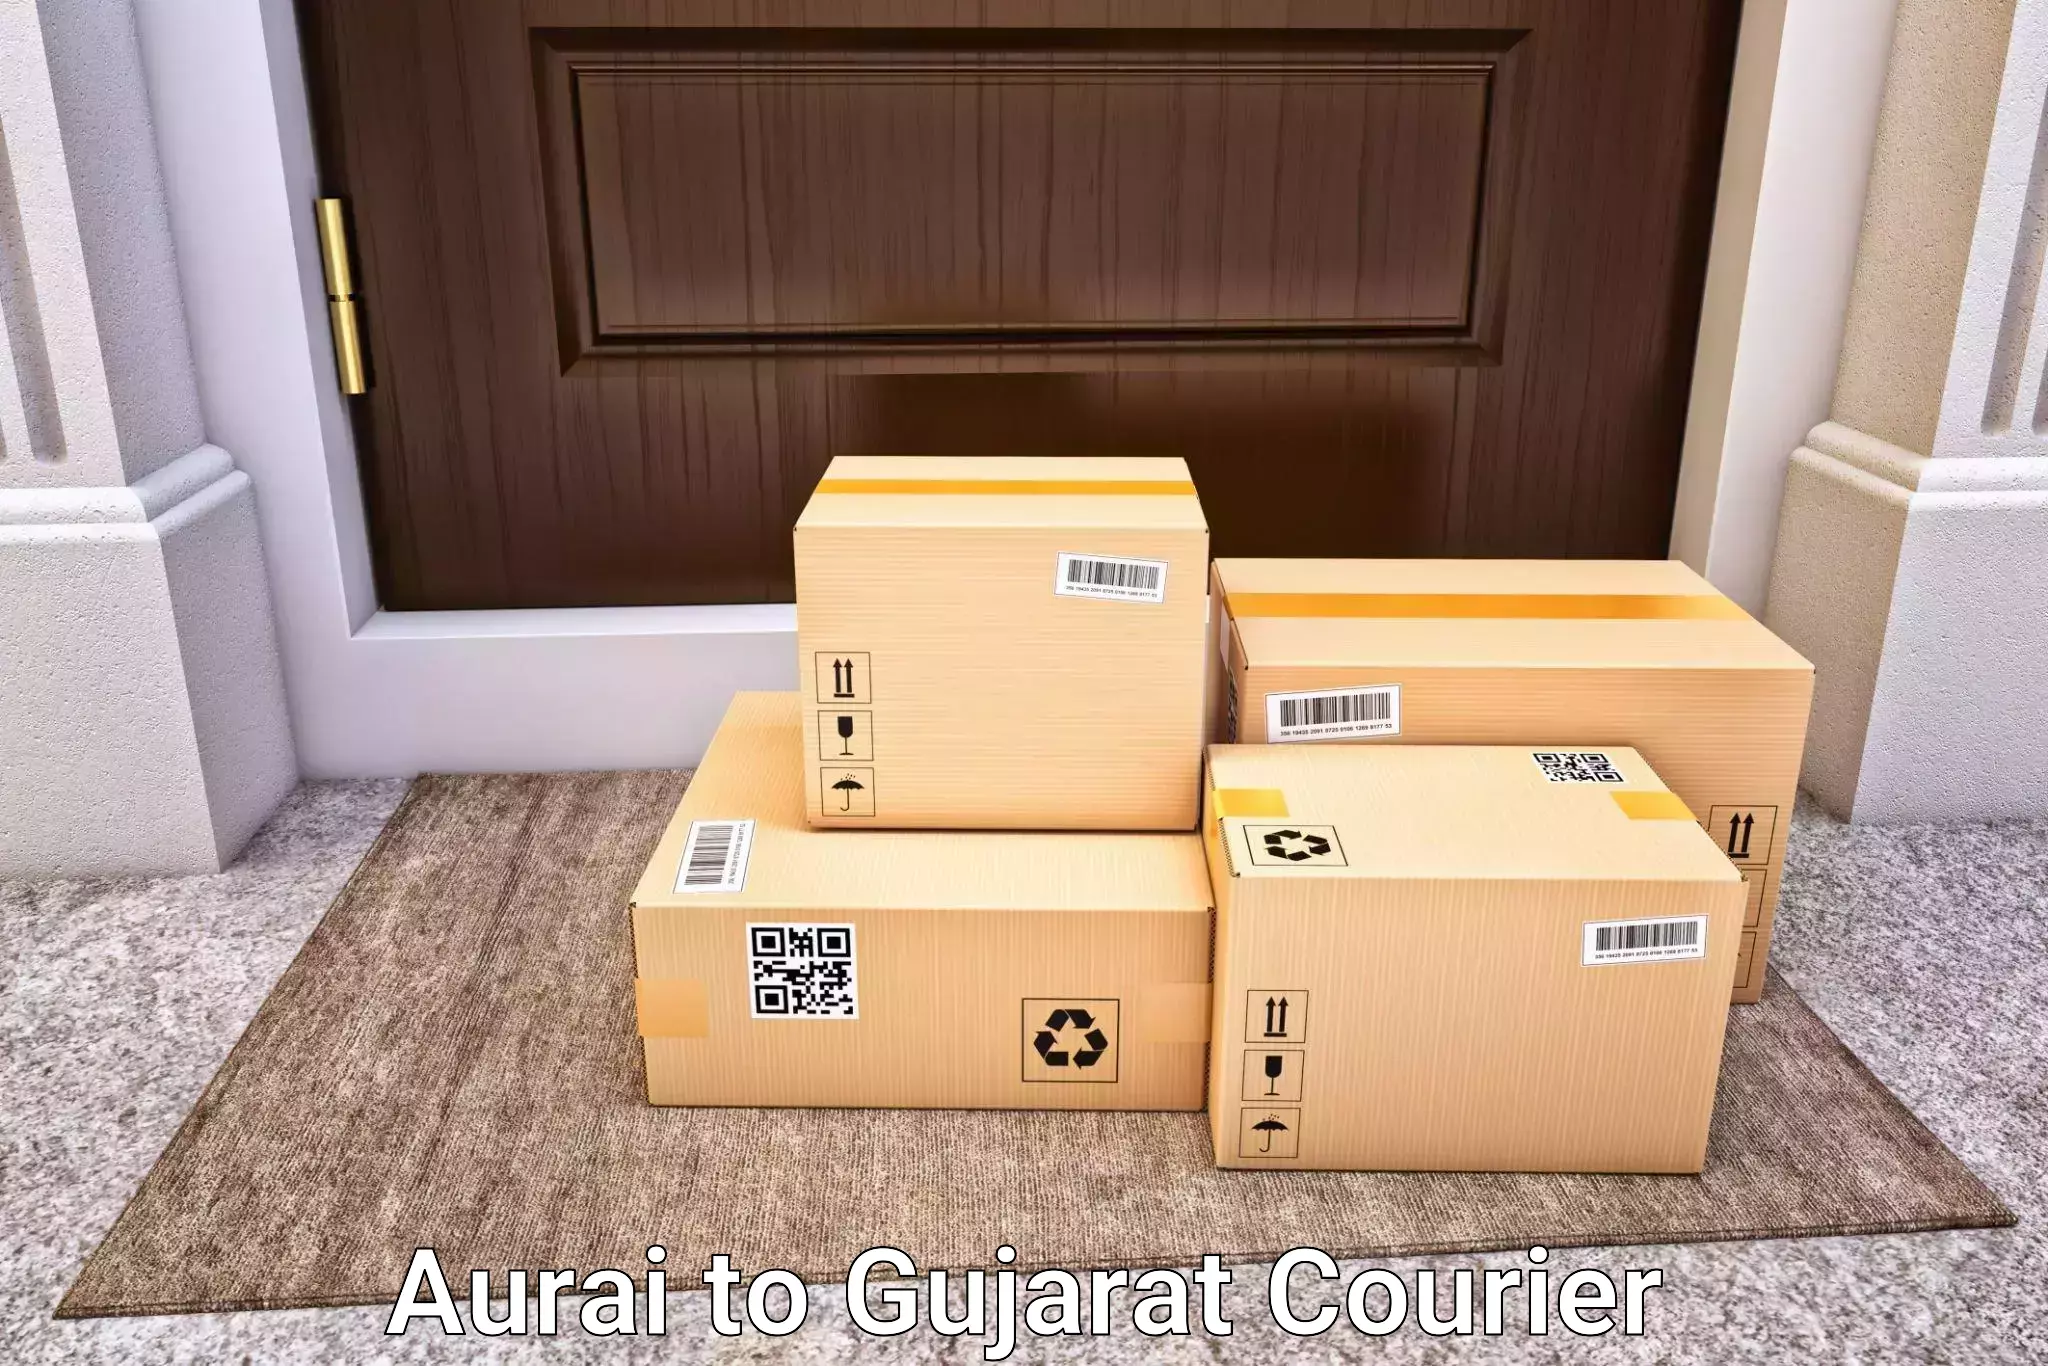 Door-to-door baggage service Aurai to IIIT Surat